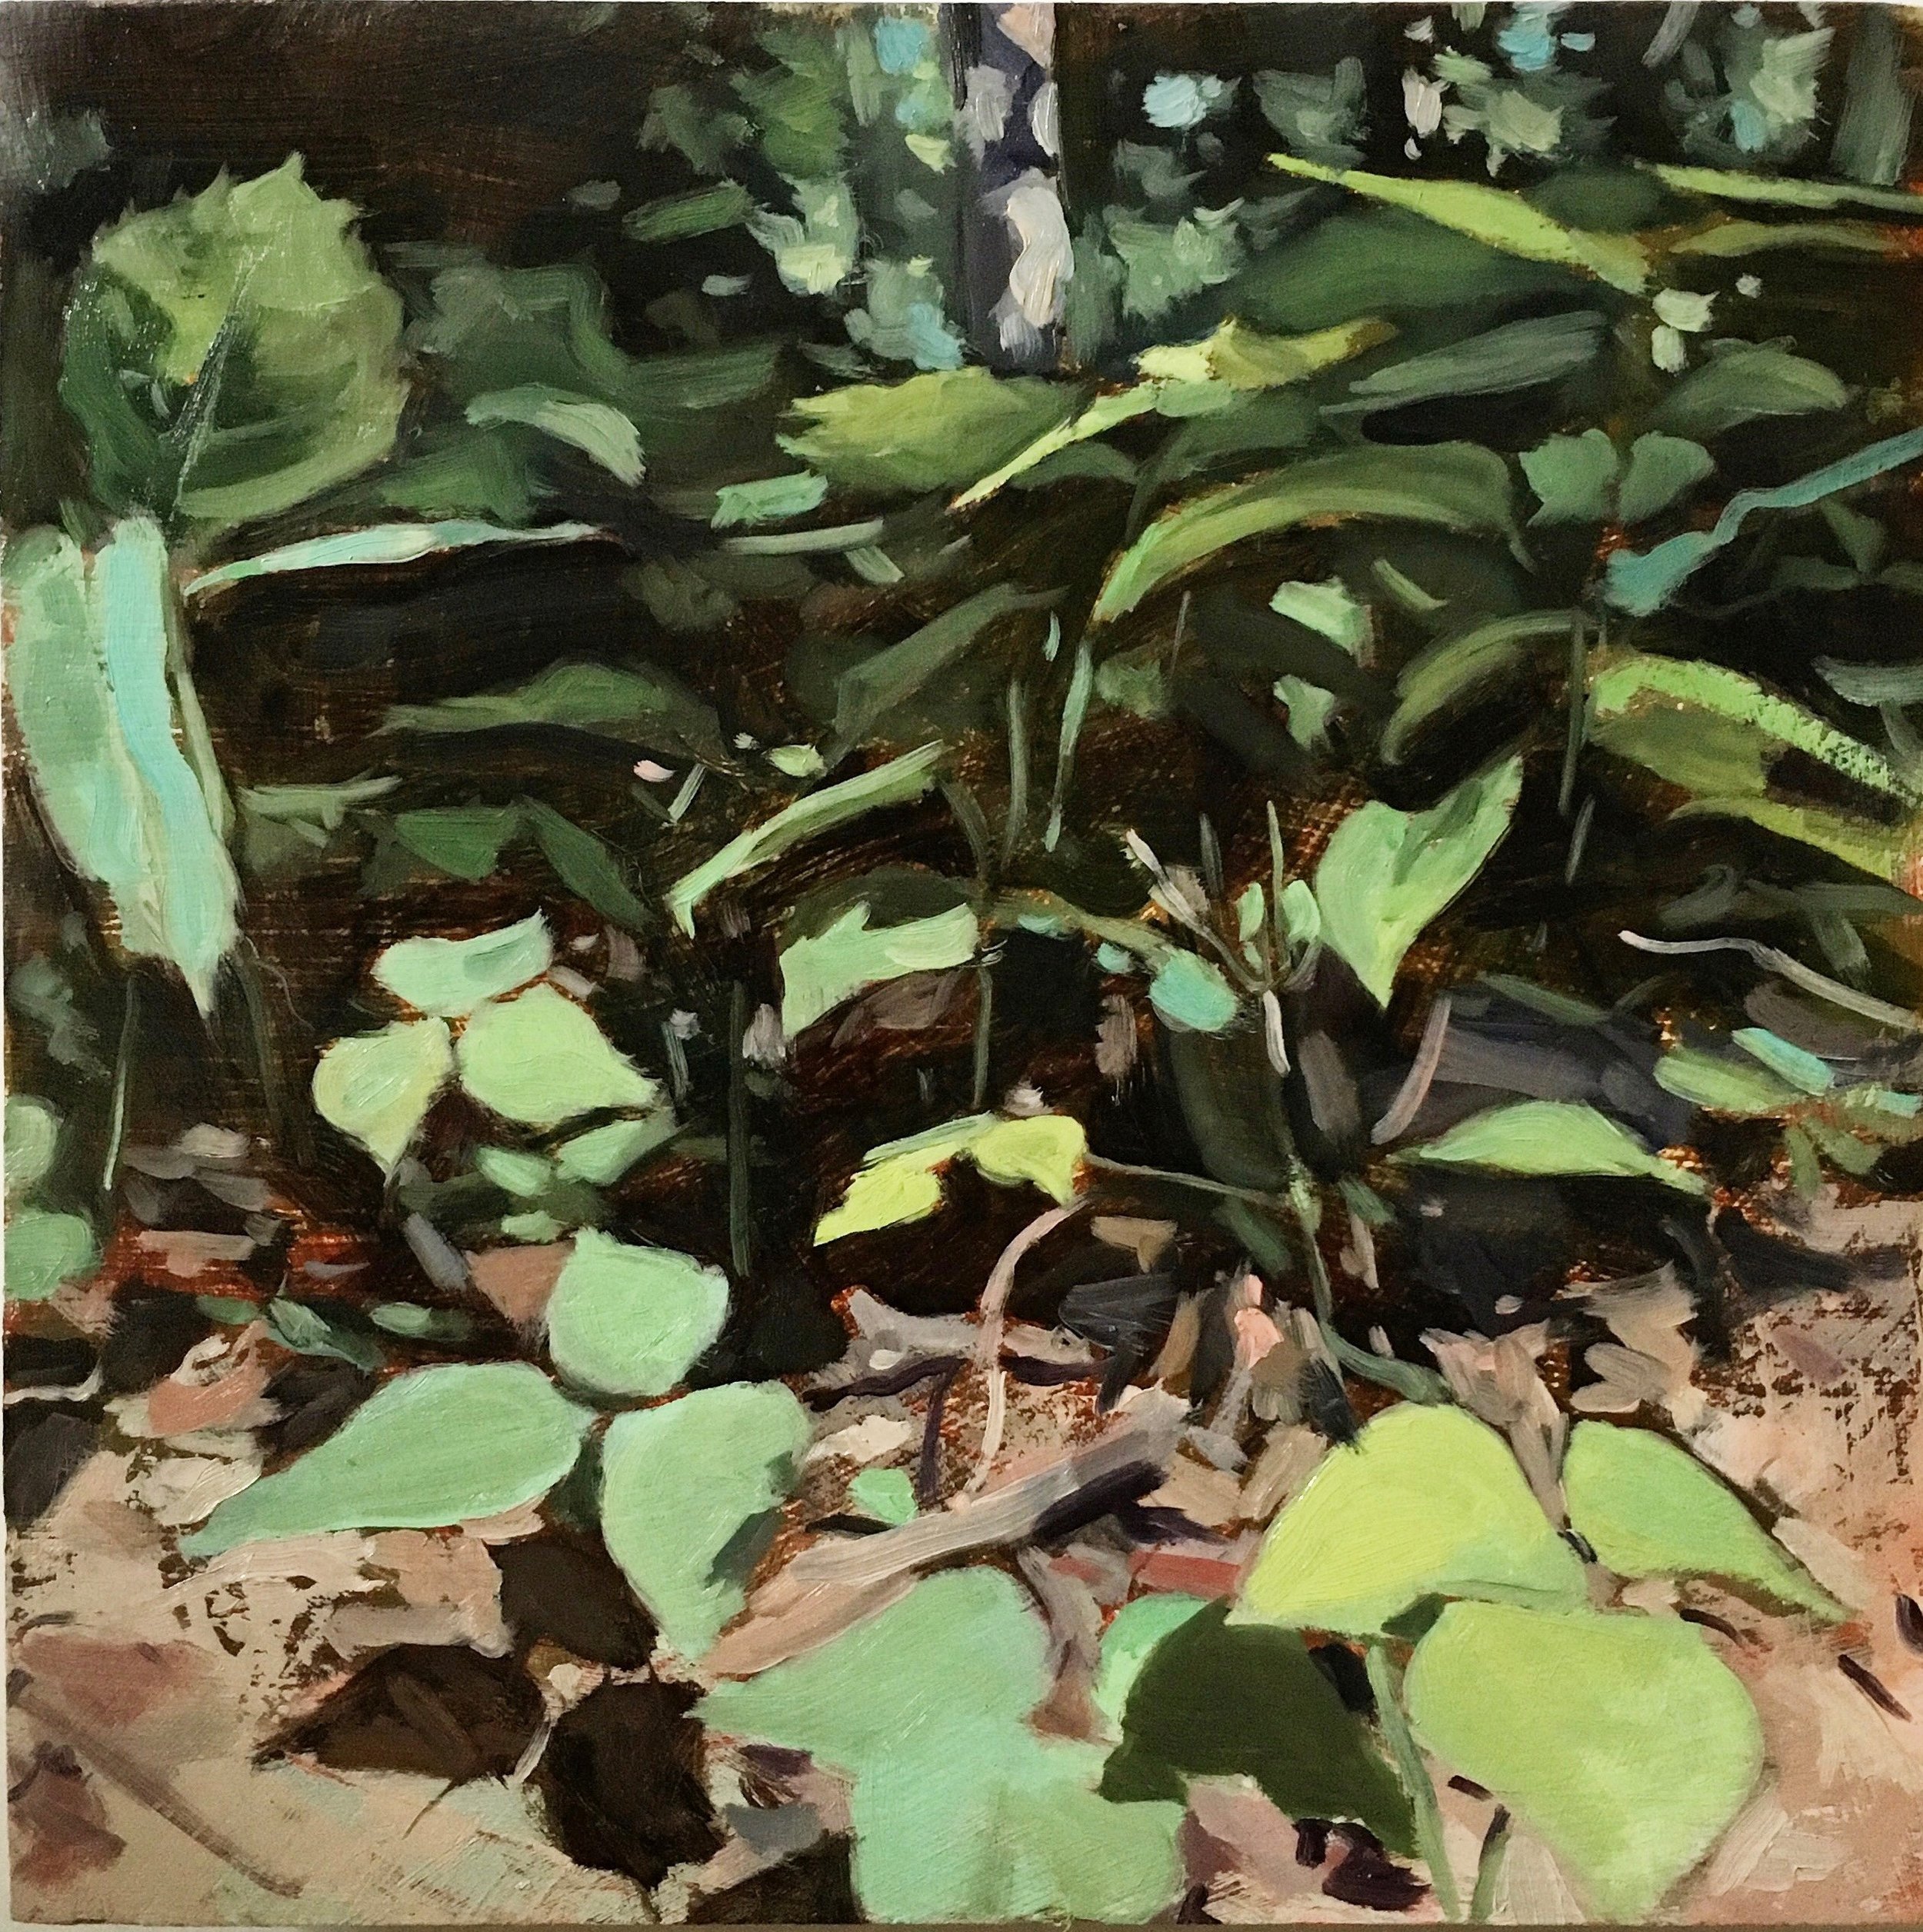 Undergrowth, oil on panel, 8"x8", 2018